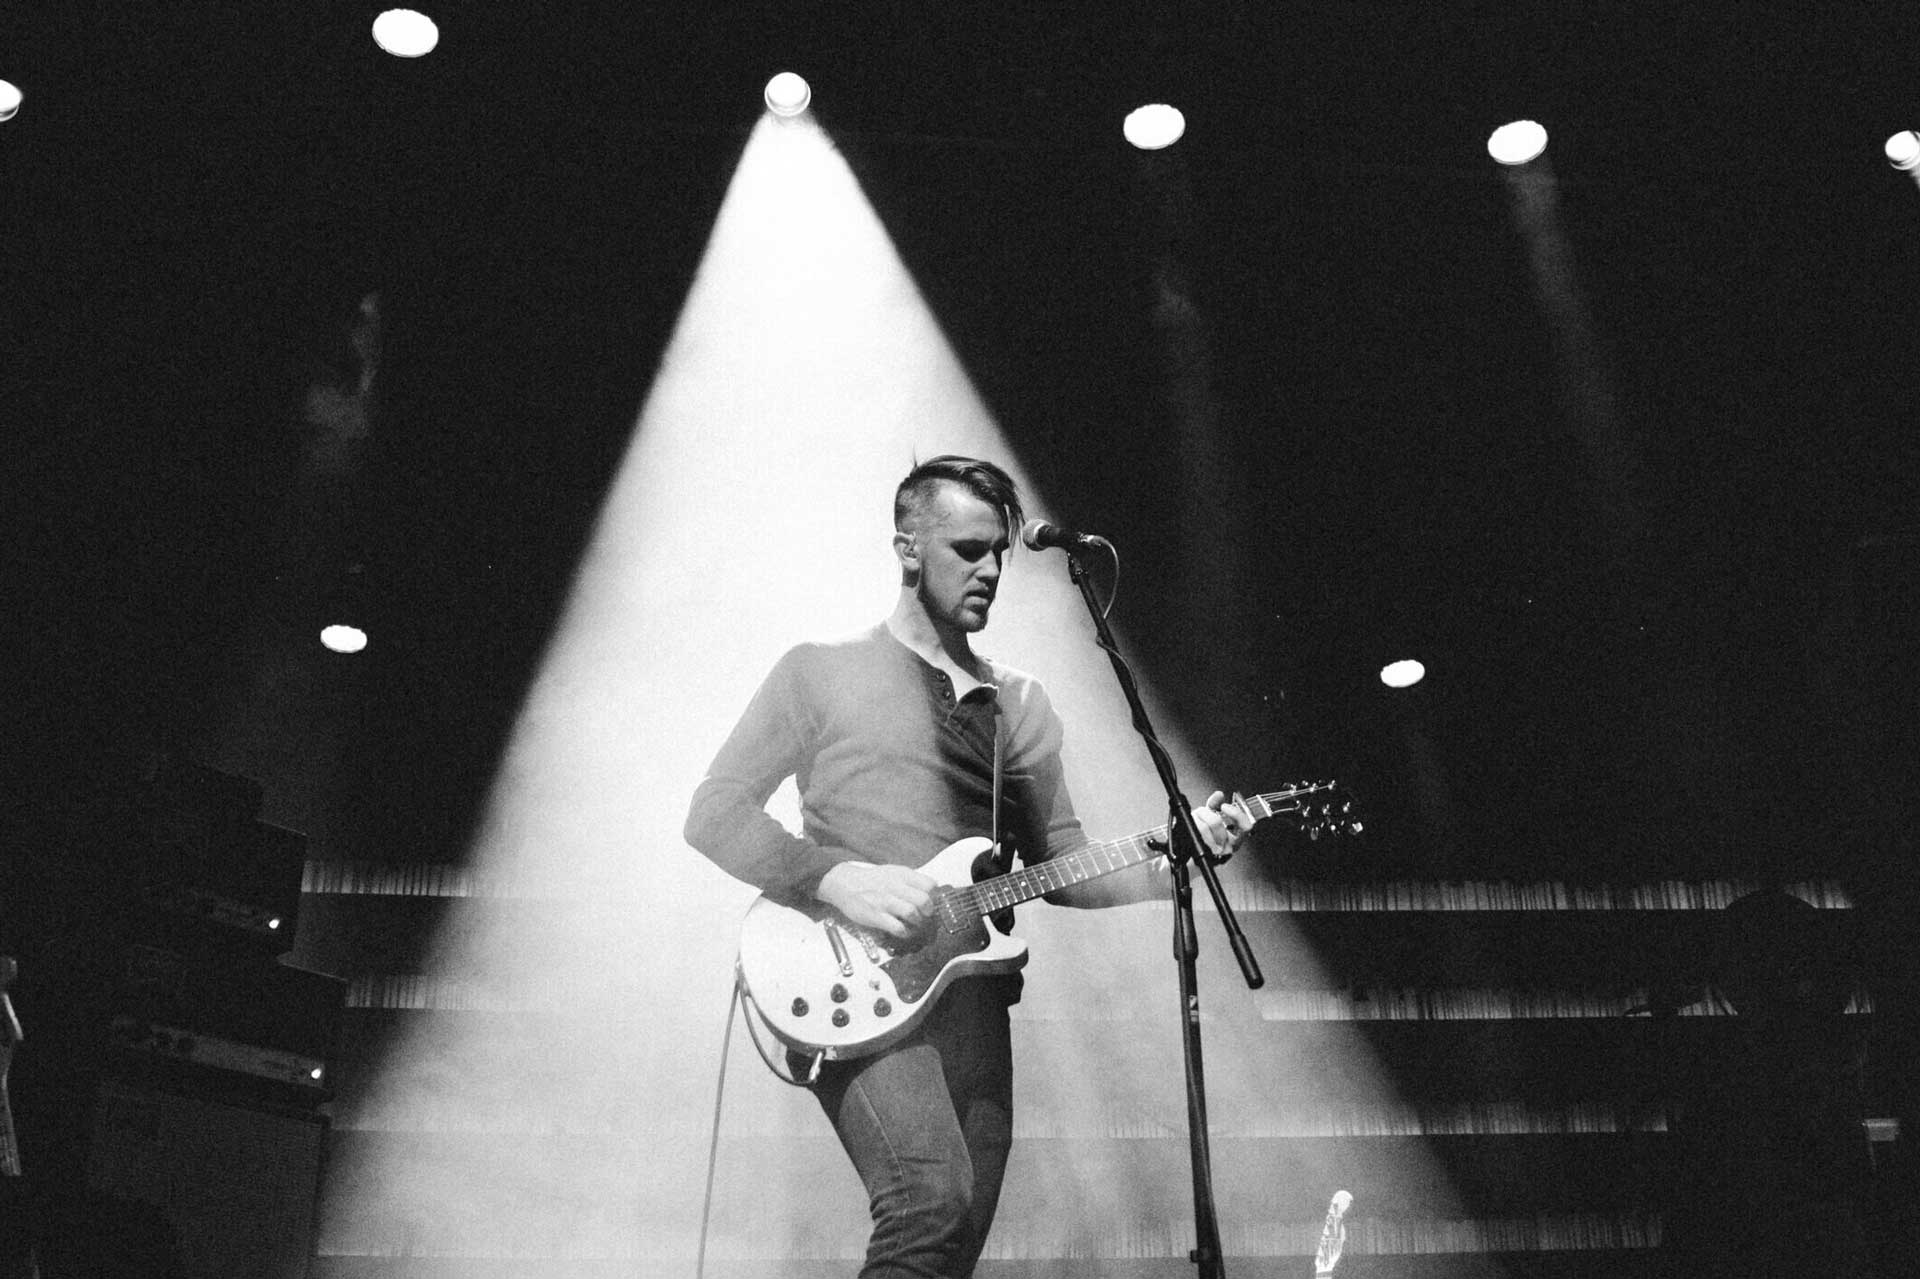 Музыкант Питер Фергюсон на сцене с гитарой и микрофоном под светом прожекторов